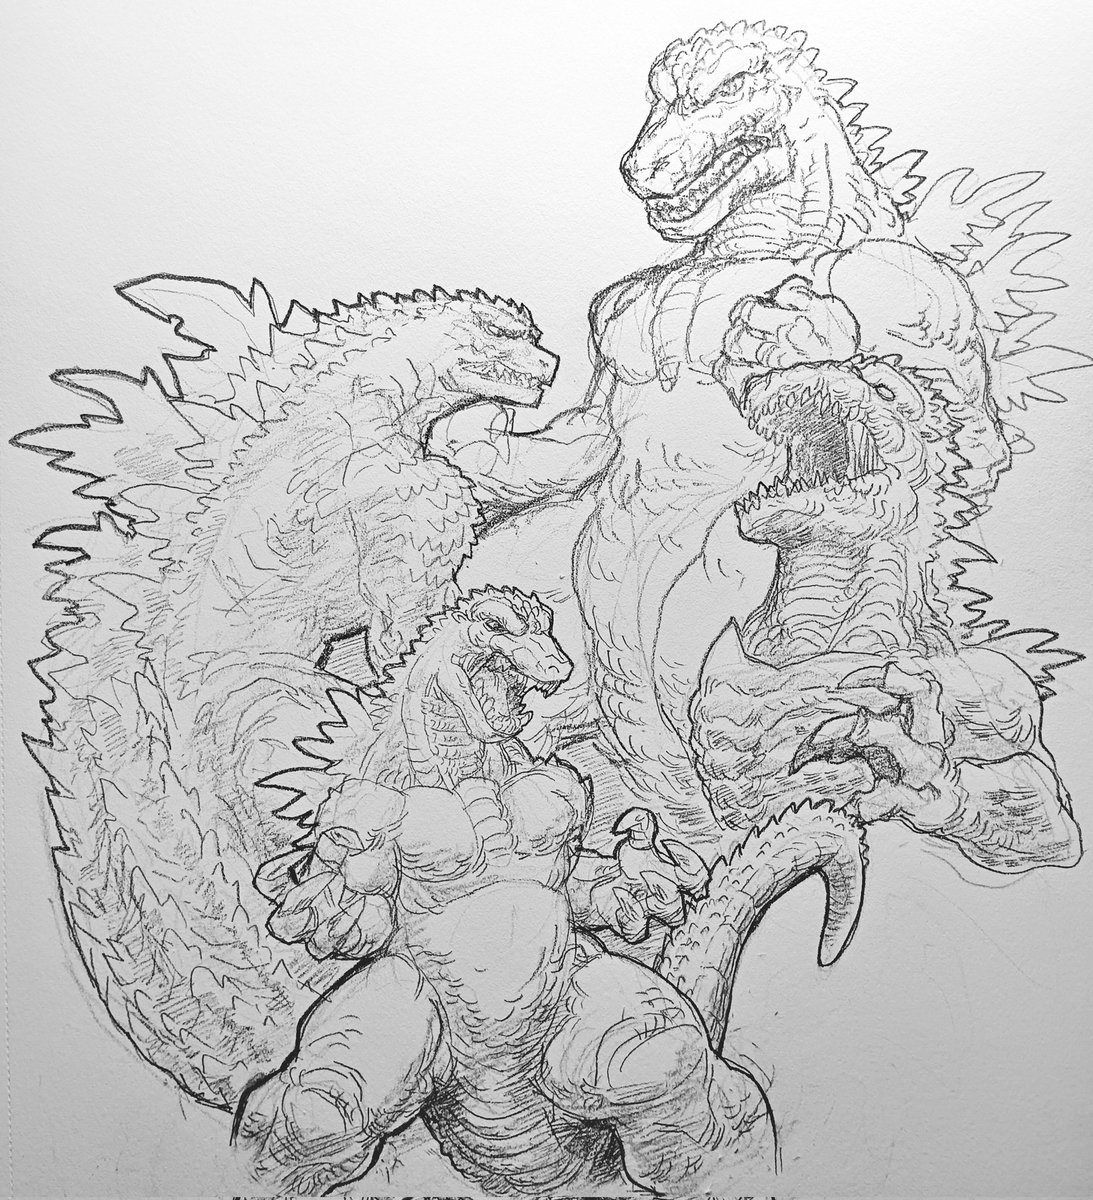 Full page Godzilla!